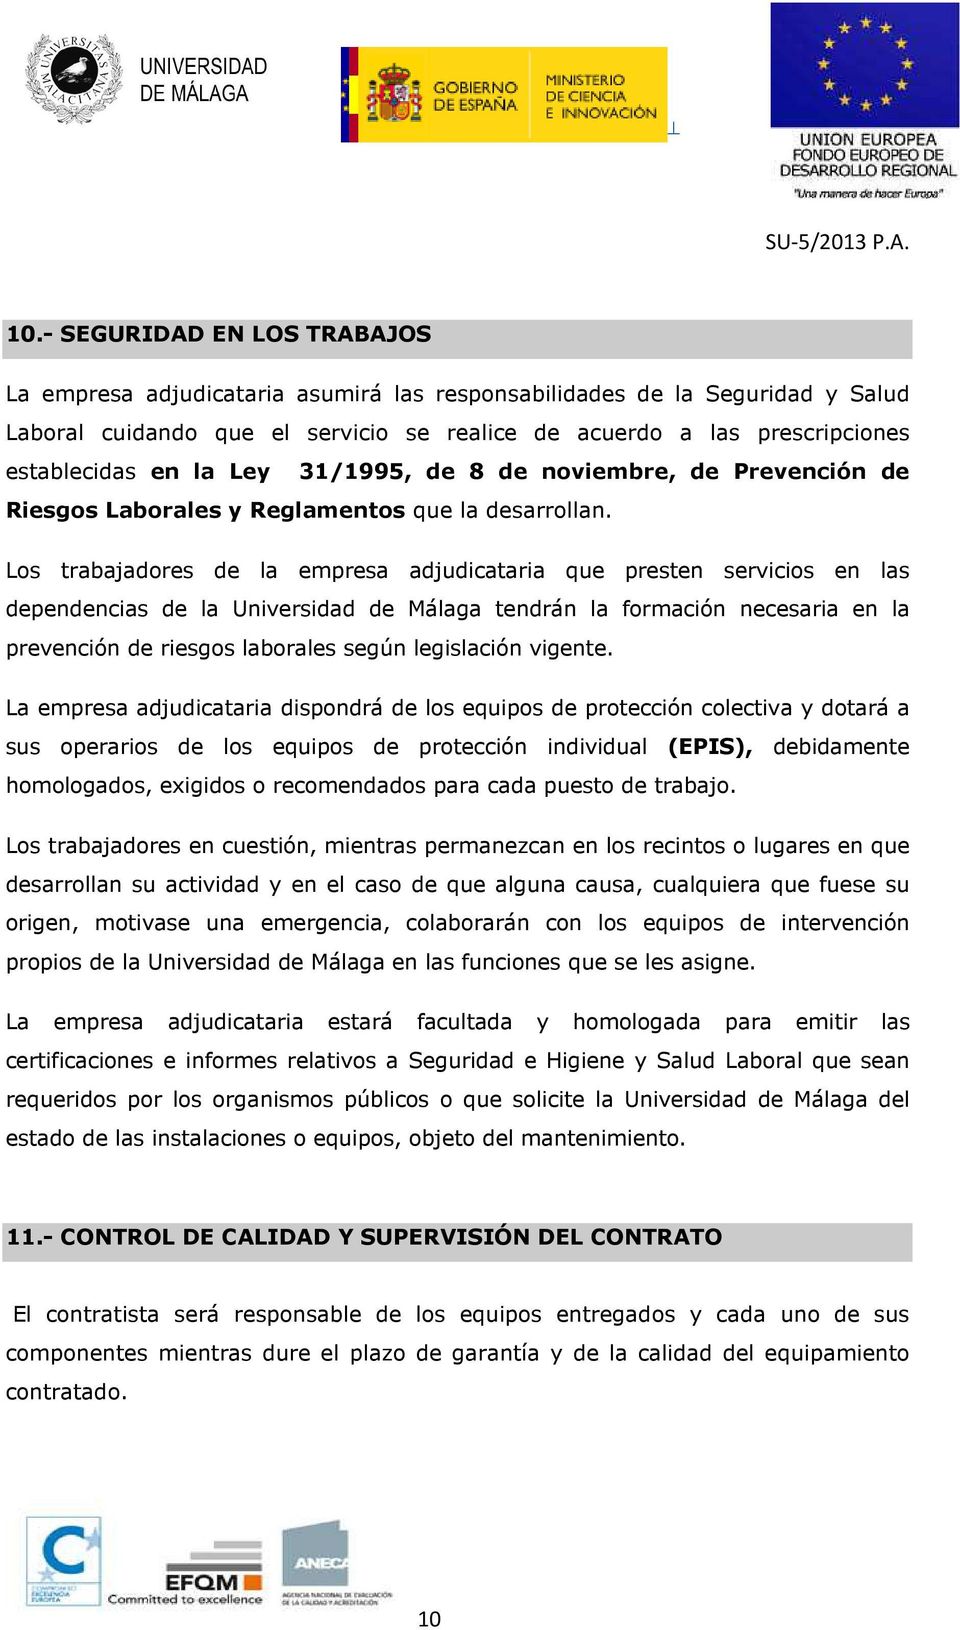 Los trabajadores de la empresa adjudicataria que presten servicios en las dependencias de la Universidad de Málaga tendrán la formación necesaria en la prevención de riesgos laborales según